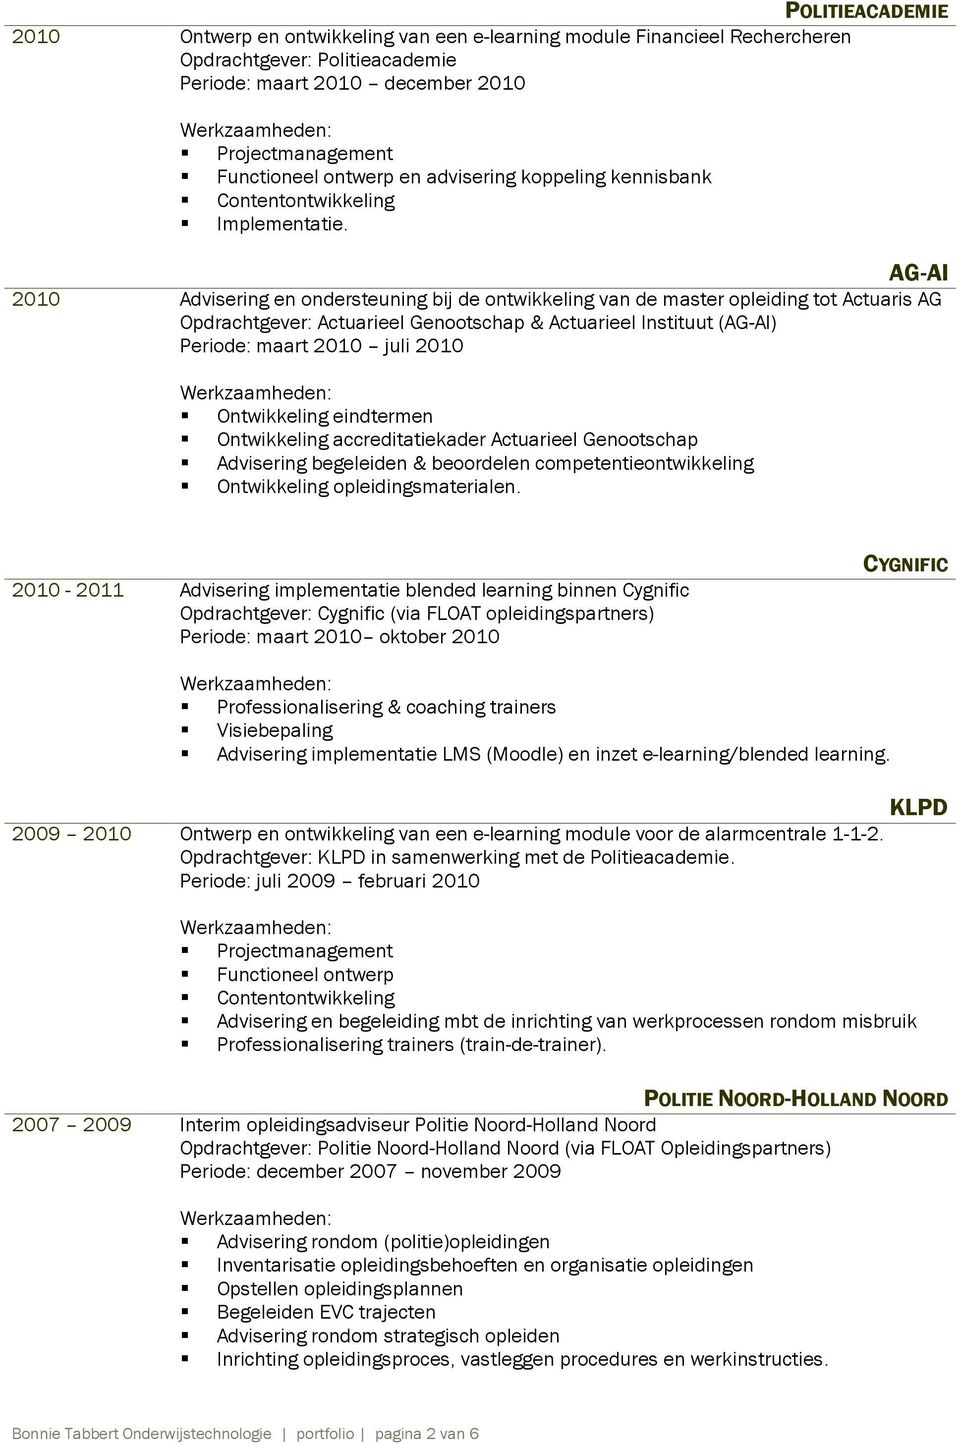 AG-AI 2010 Advisering en ondersteuning bij de ontwikkeling van de master opleiding tot Actuaris AG Opdrachtgever: Actuarieel Genootschap & Actuarieel Instituut (AG-AI) Periode: maart 2010 juli 2010